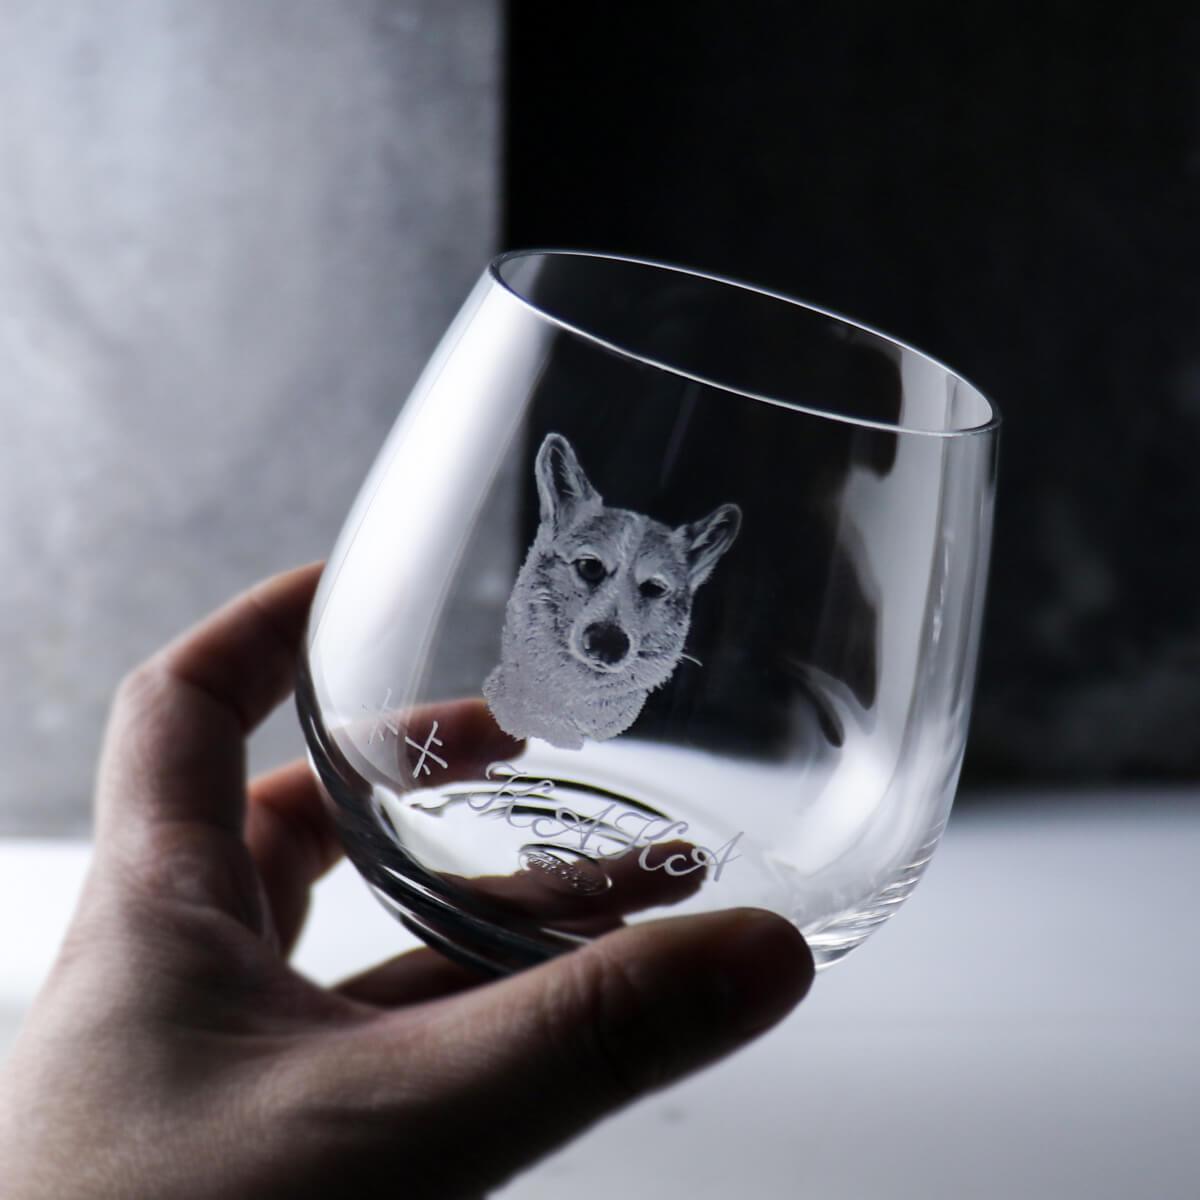 345cc【狗】(寫實版)寵物犬雕刻威士忌杯 - MSA玻璃雕刻